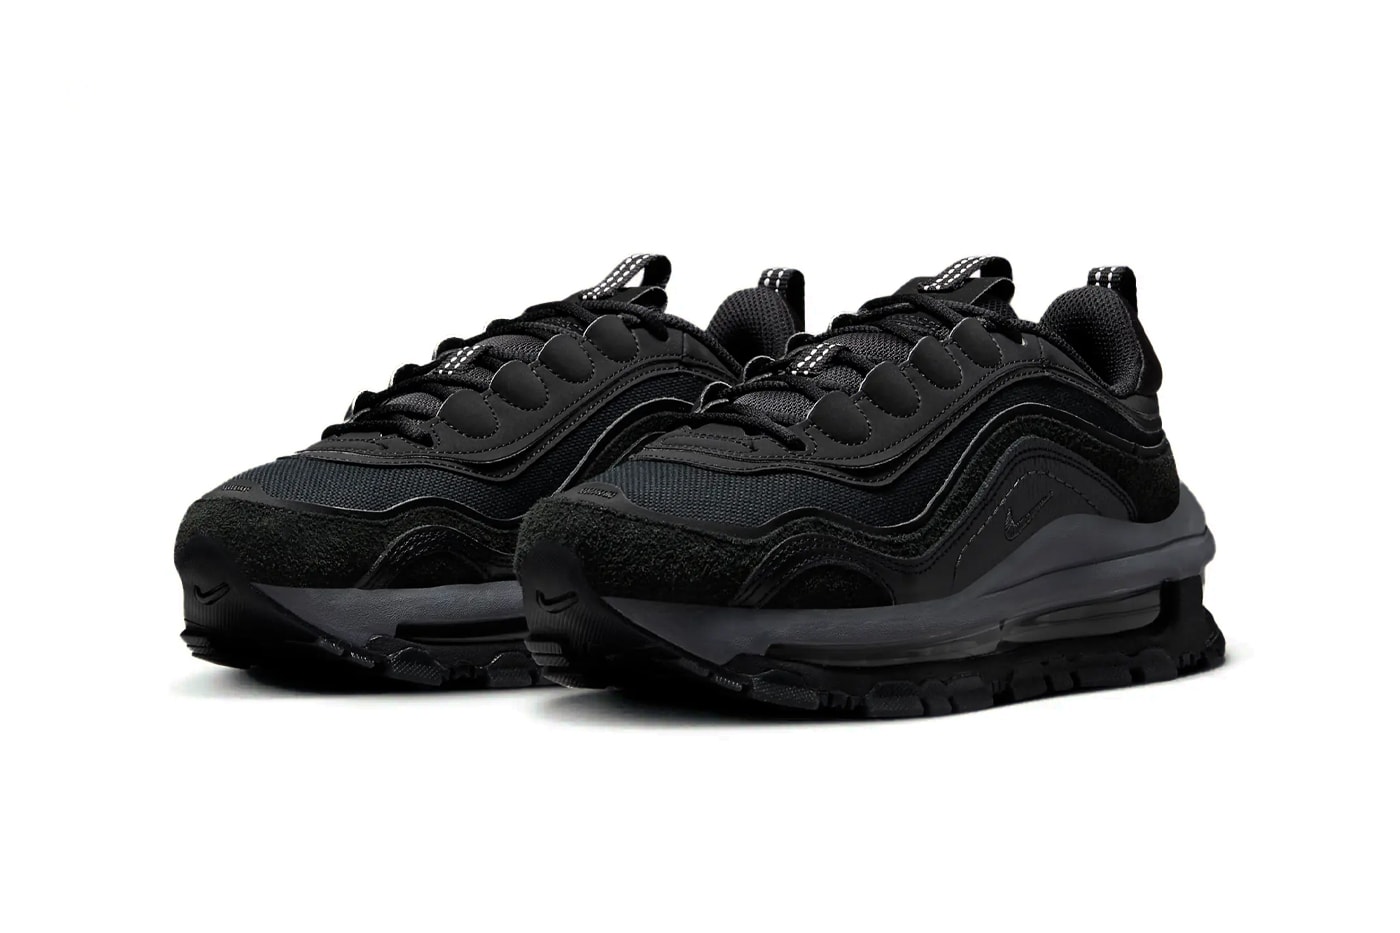 ナイキエアマックス 97 フューチュラにオールブラックの新作 “トリプルブラック” が登場 Nike Air Max 97 Futura Surfaces in Stealthy "Triple Black" FB4496-002 release info swoosh sneakers oversized technical dad shoes subtle all black